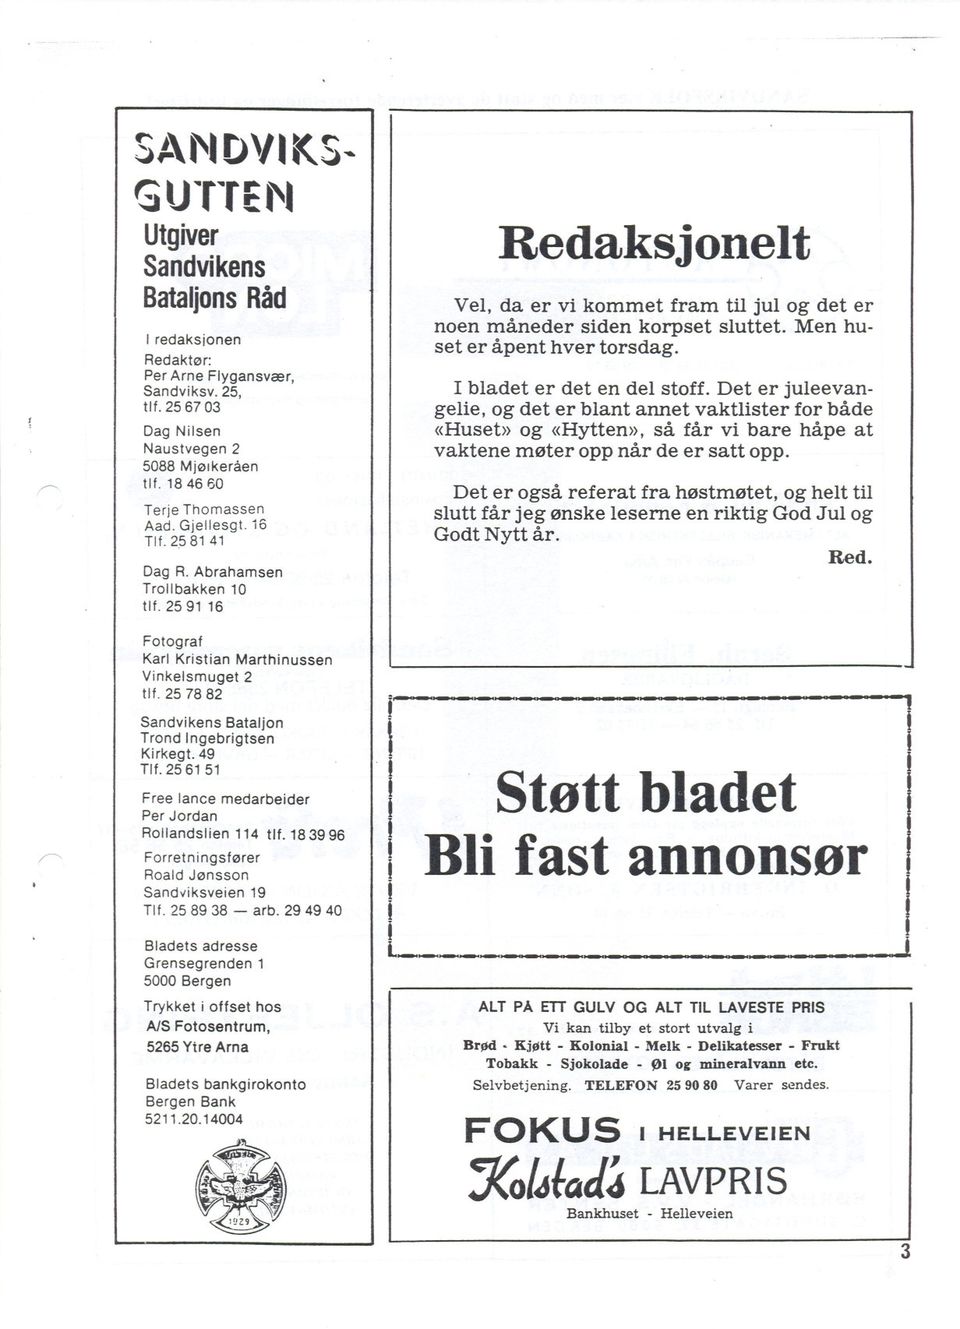 25 61 51 Free lance medarbeider Per Jordan Rollandslien 114 tlf. 183996 Forretningsfører Roald Jønsson Sandv'iksveien 19 Tlf. 25 89 38 - arb.